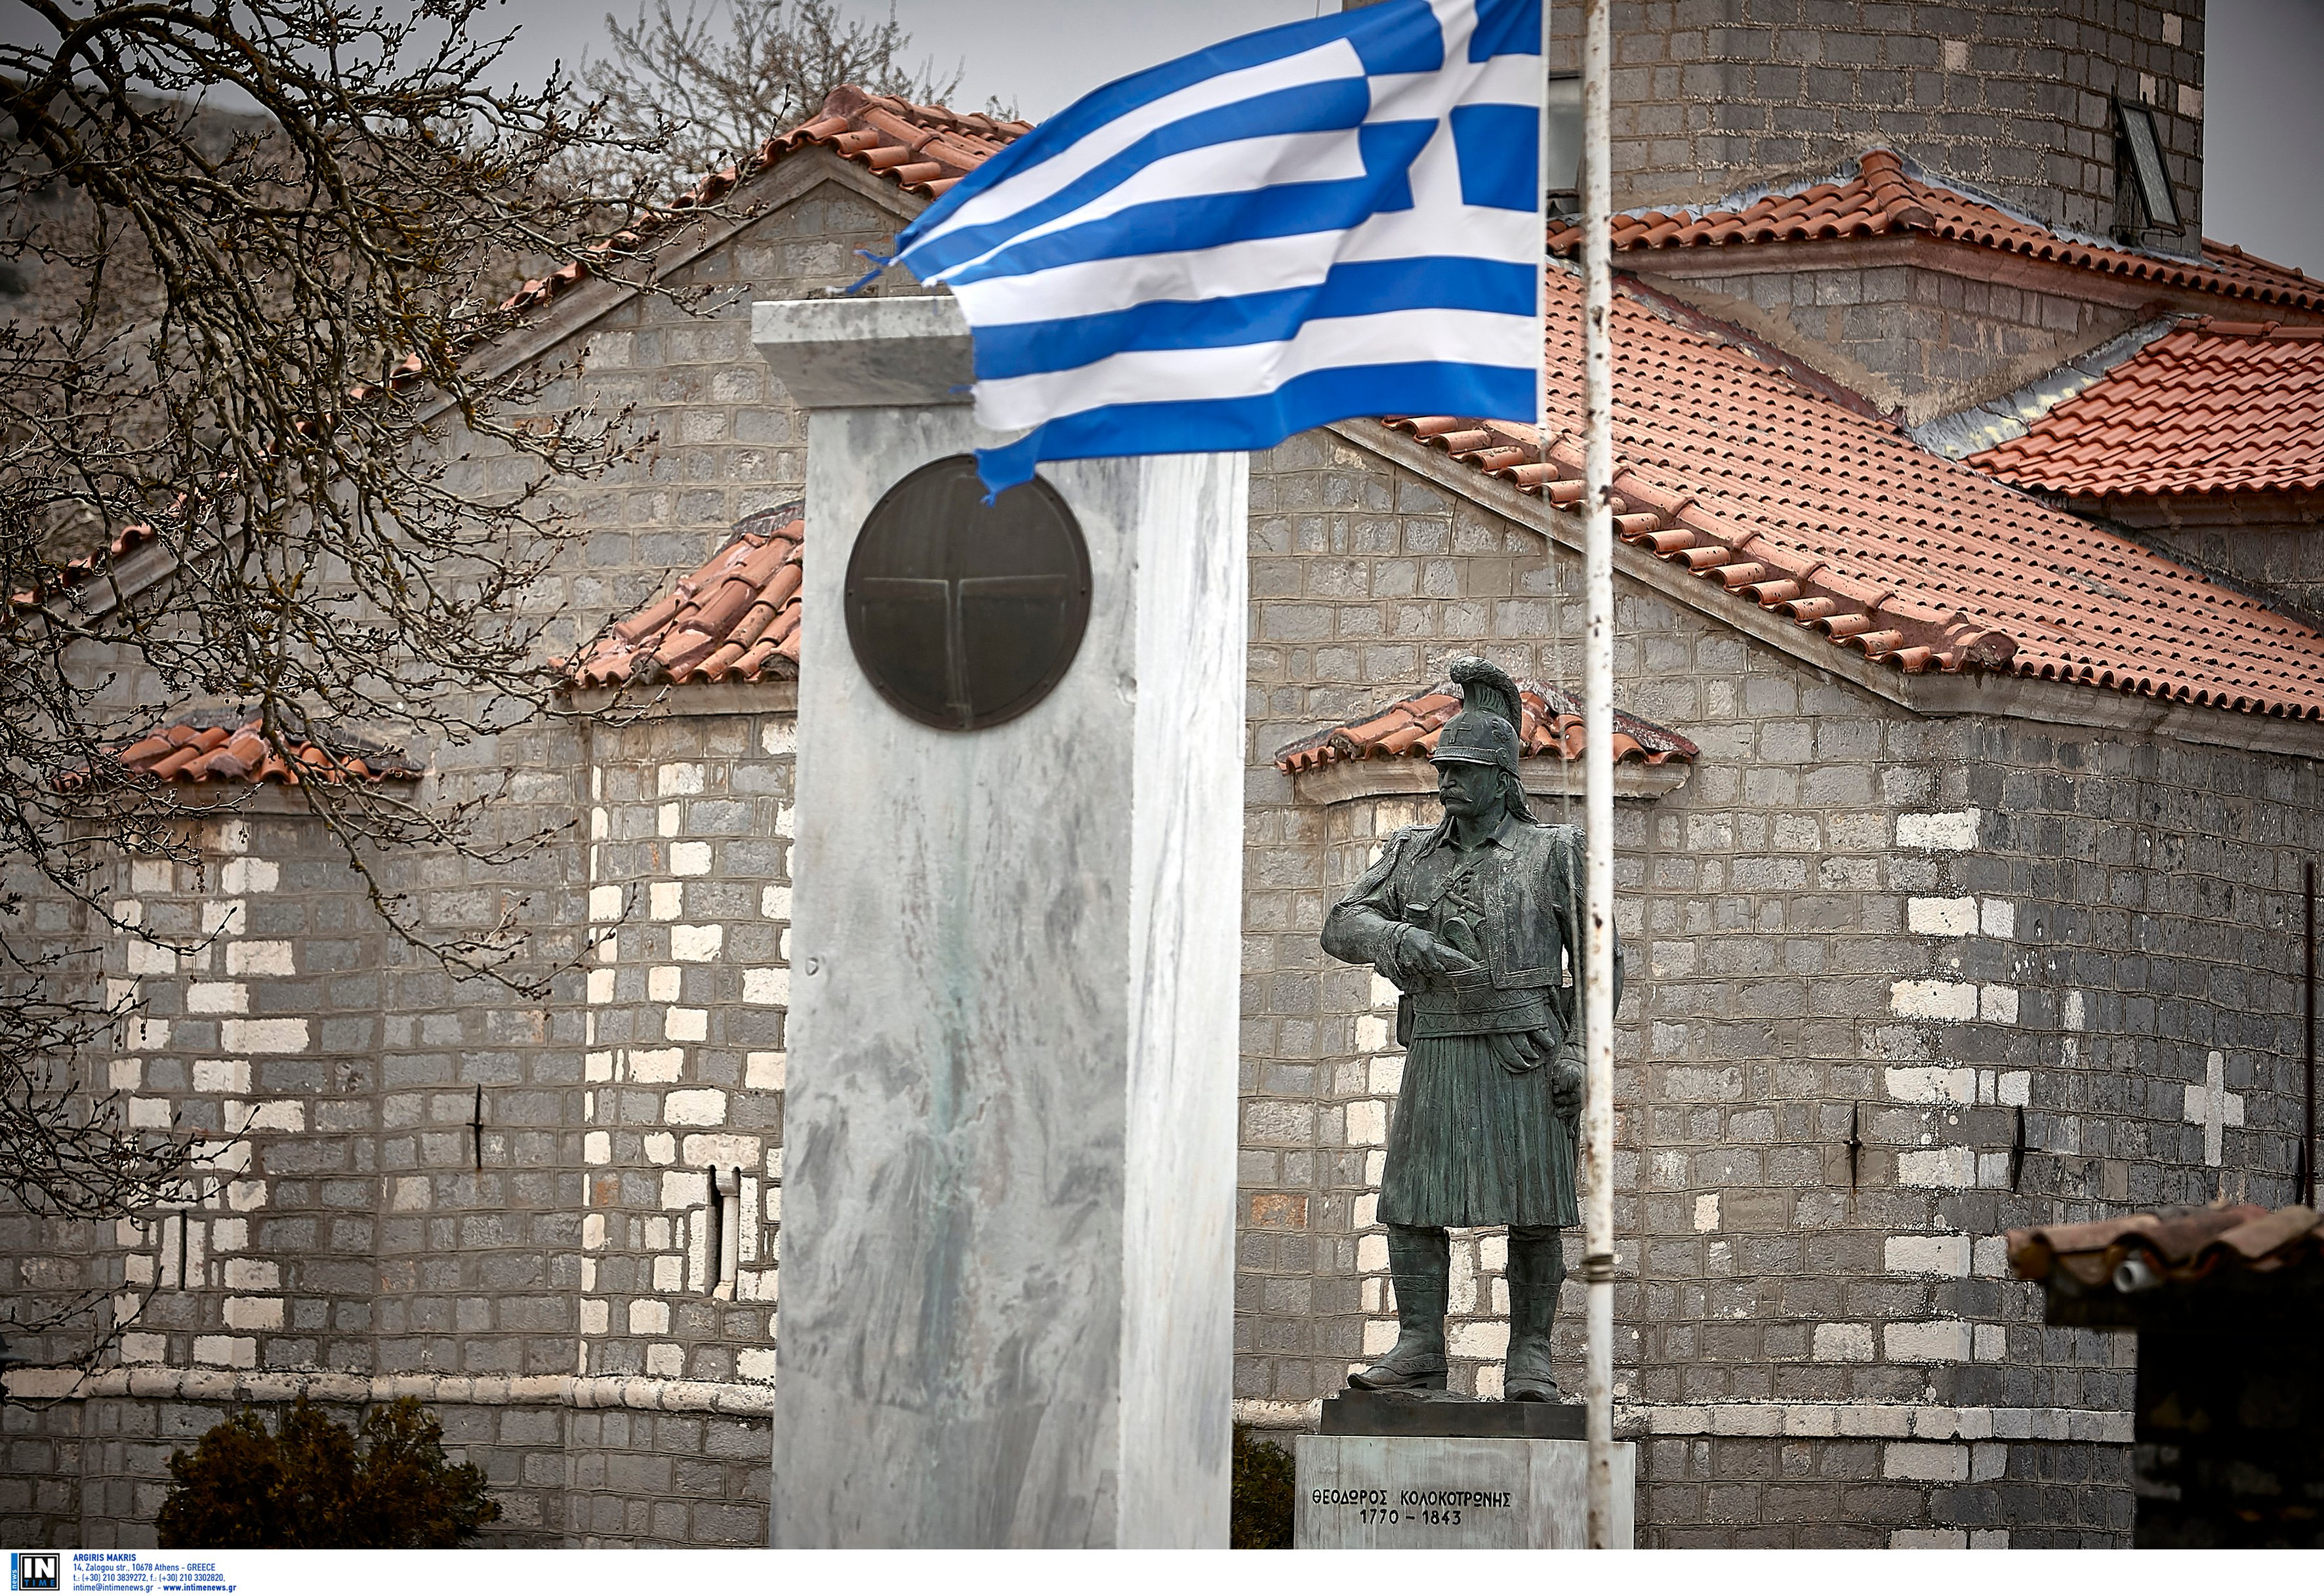 Προετοιμασία εορτασμών για τα 200 χρόνια της Ελληνικής Επανάστασης (Copyright: Intime)